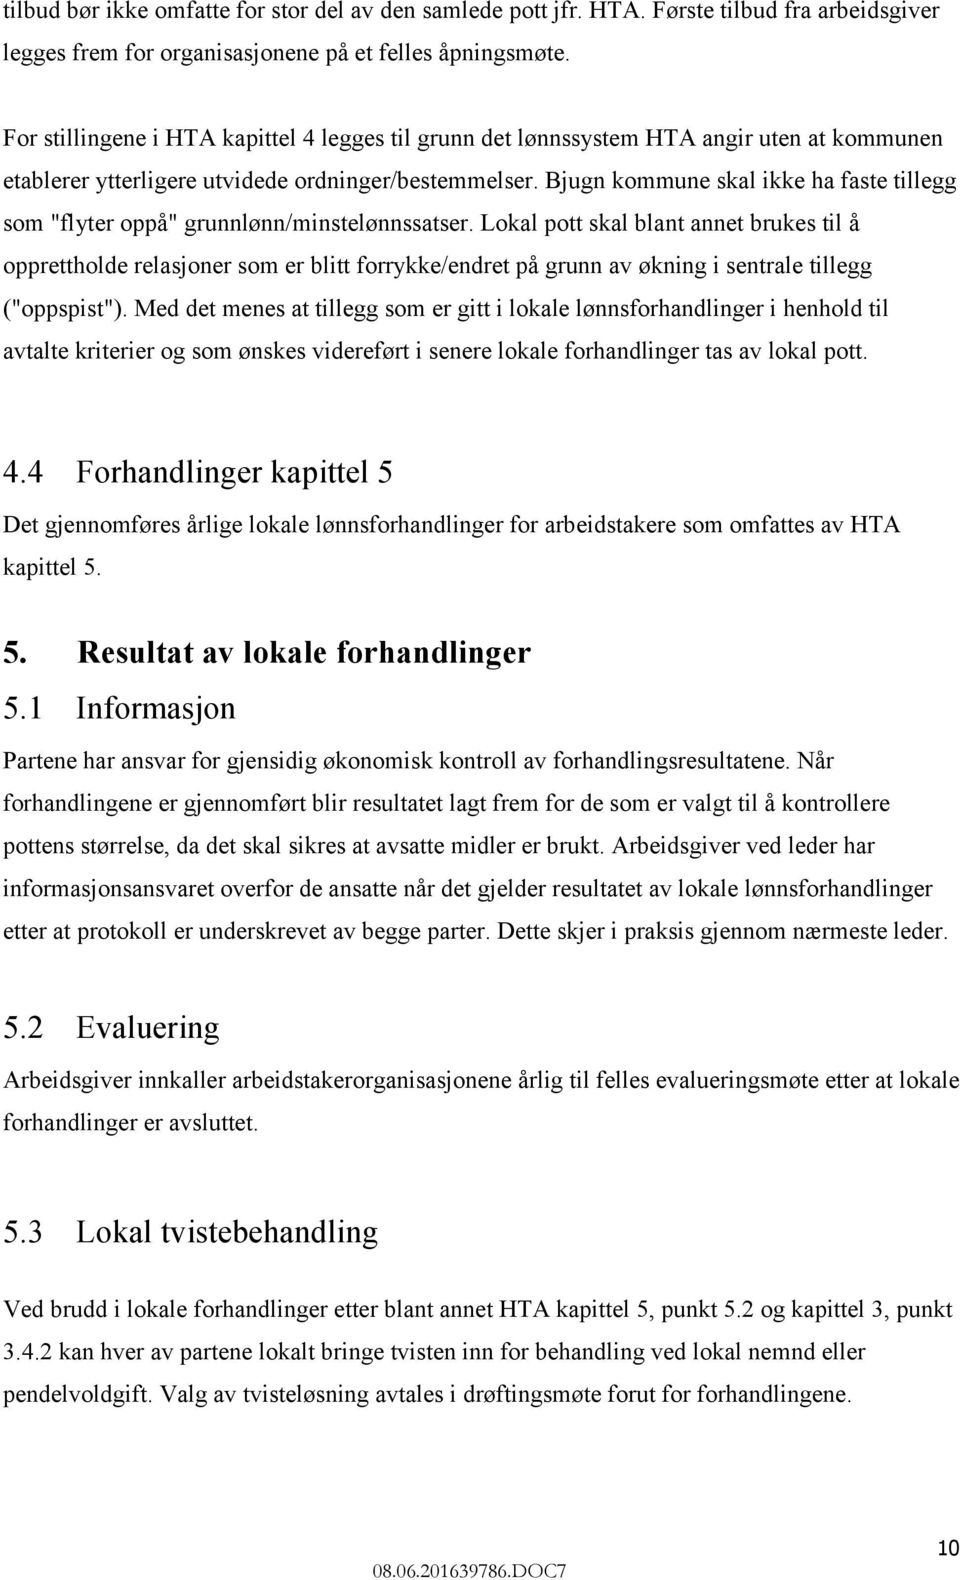 Bjugn kommune skal ikke ha faste tillegg som "flyter oppå" grunnlønn/minstelønnssatser.